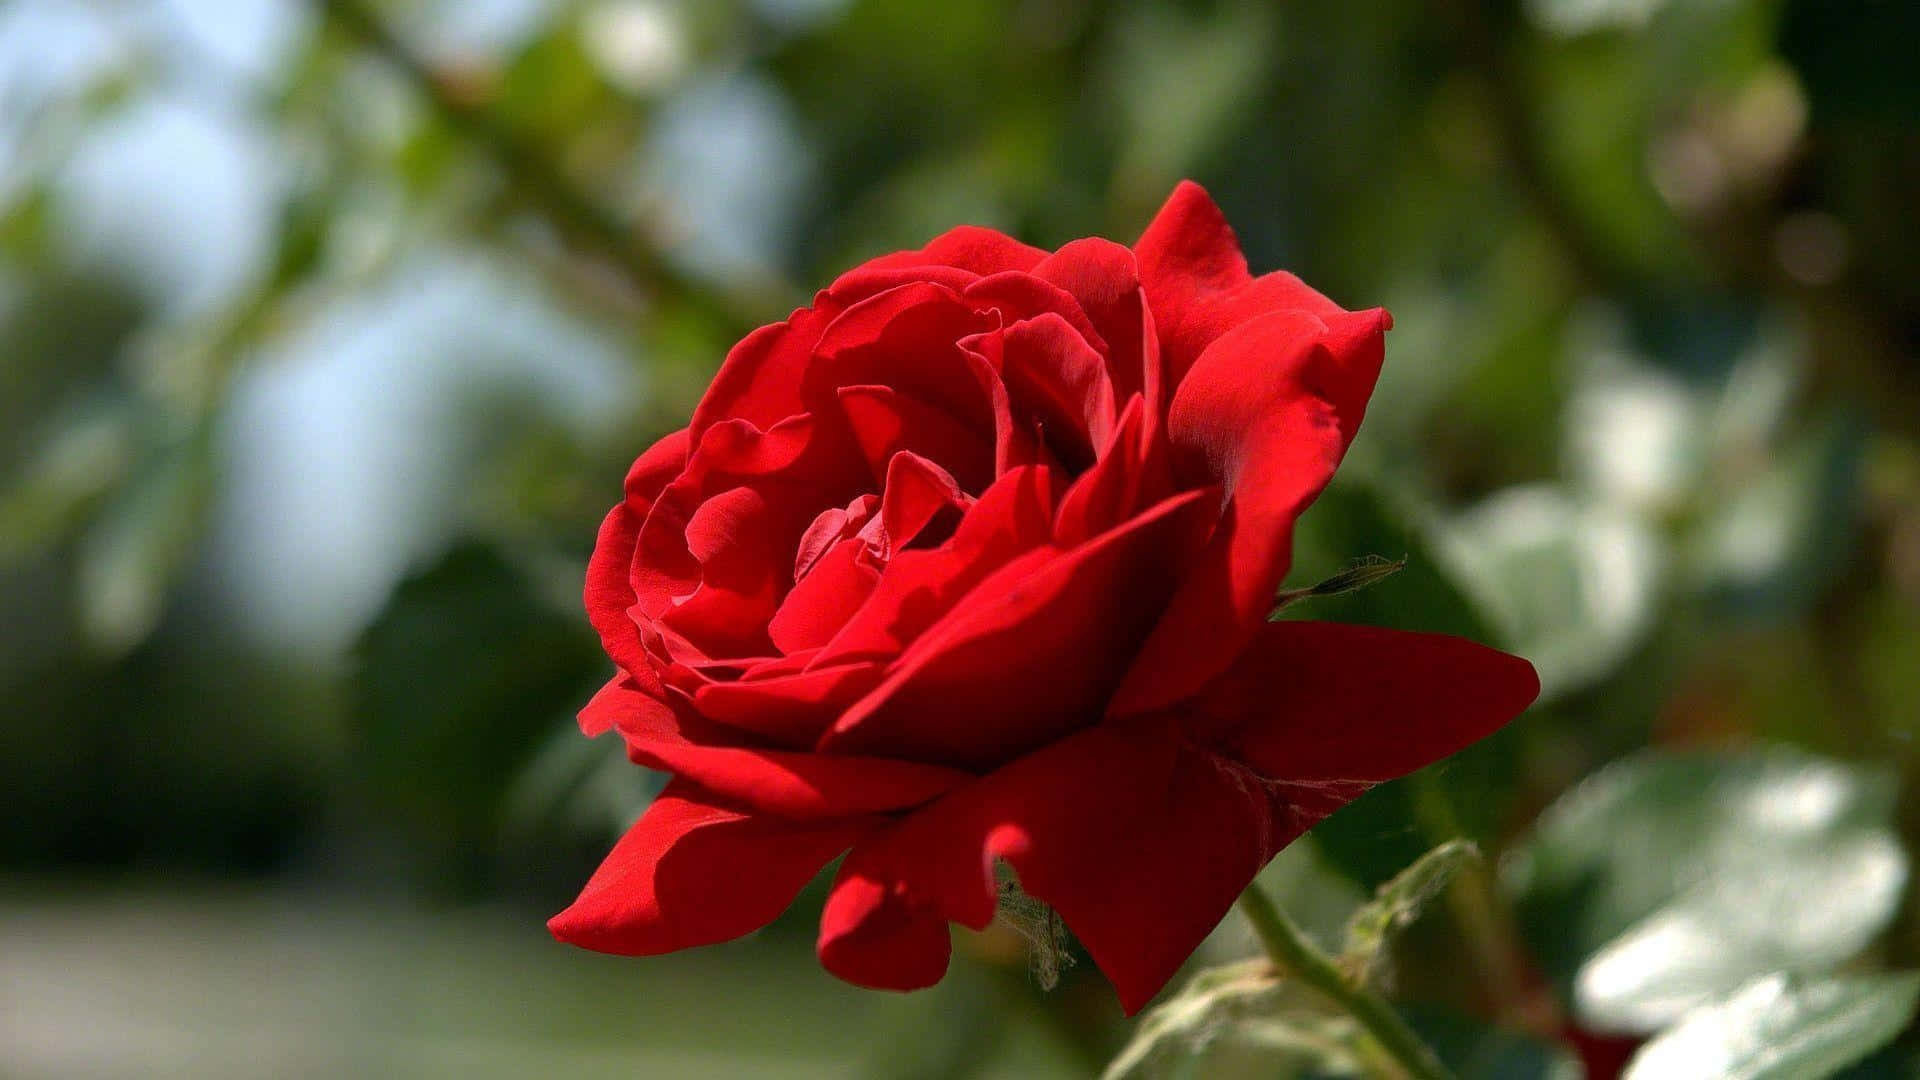 Fondode Pantalla De Rosa Roja En Plena Floración En Resolución 1080p.